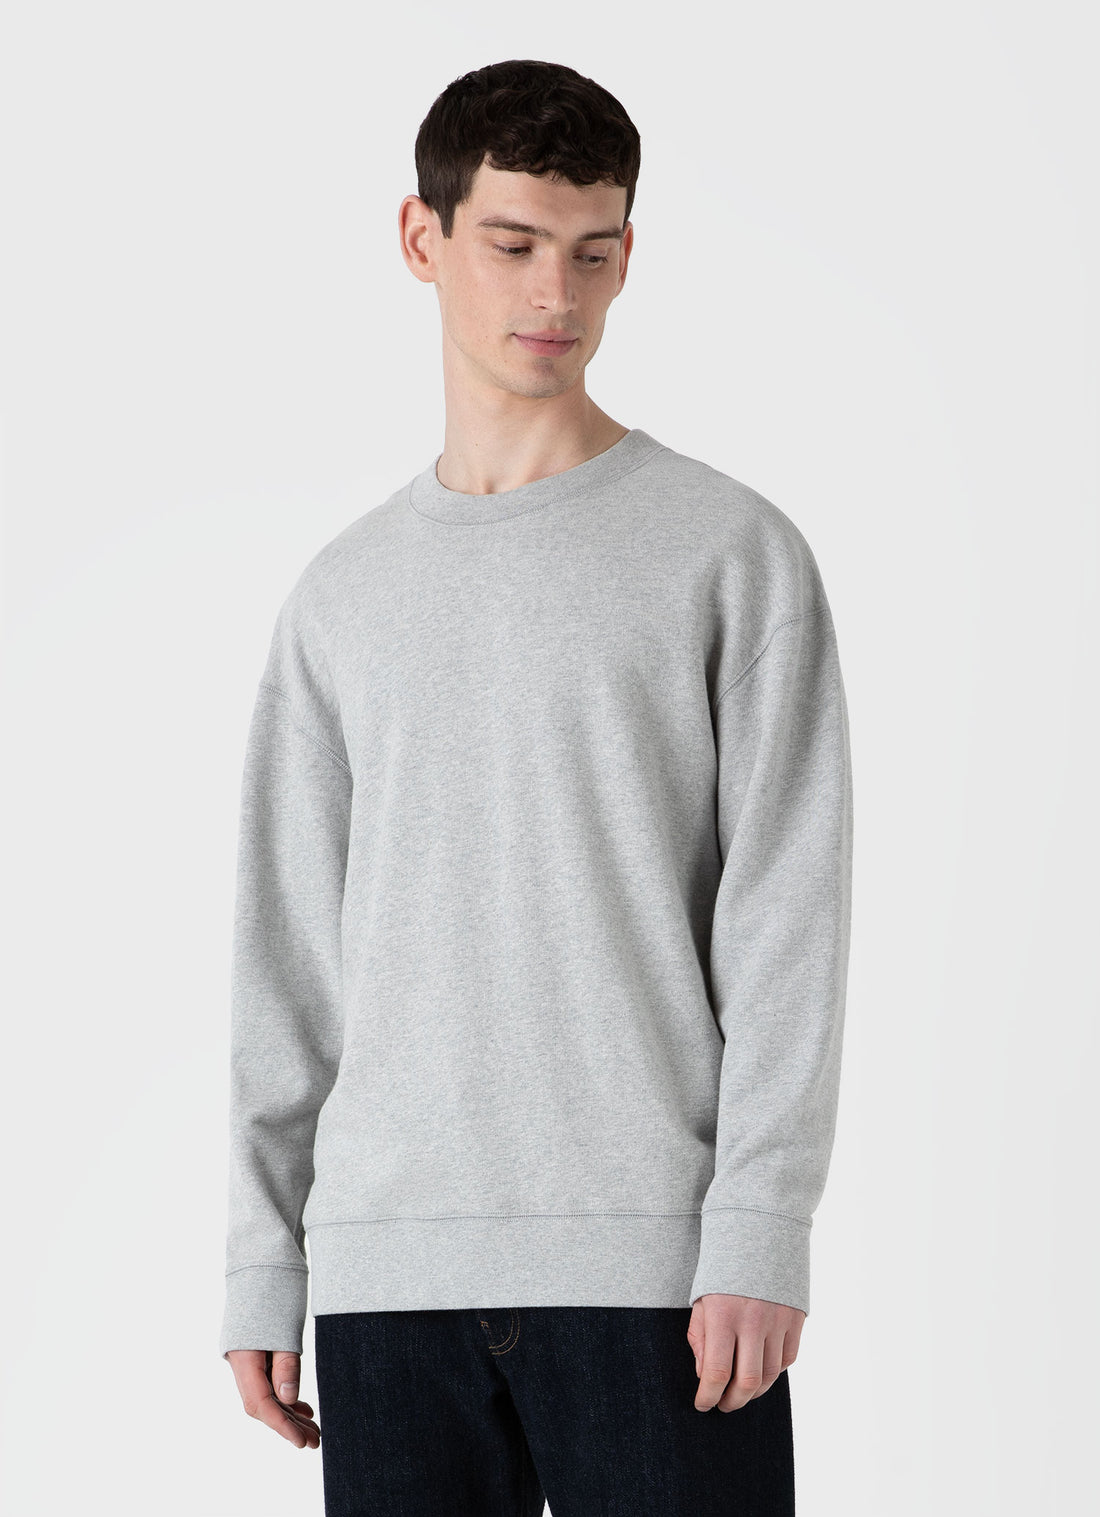 Men's Oversized Loopback Sweatshirt in Light Grey Melange